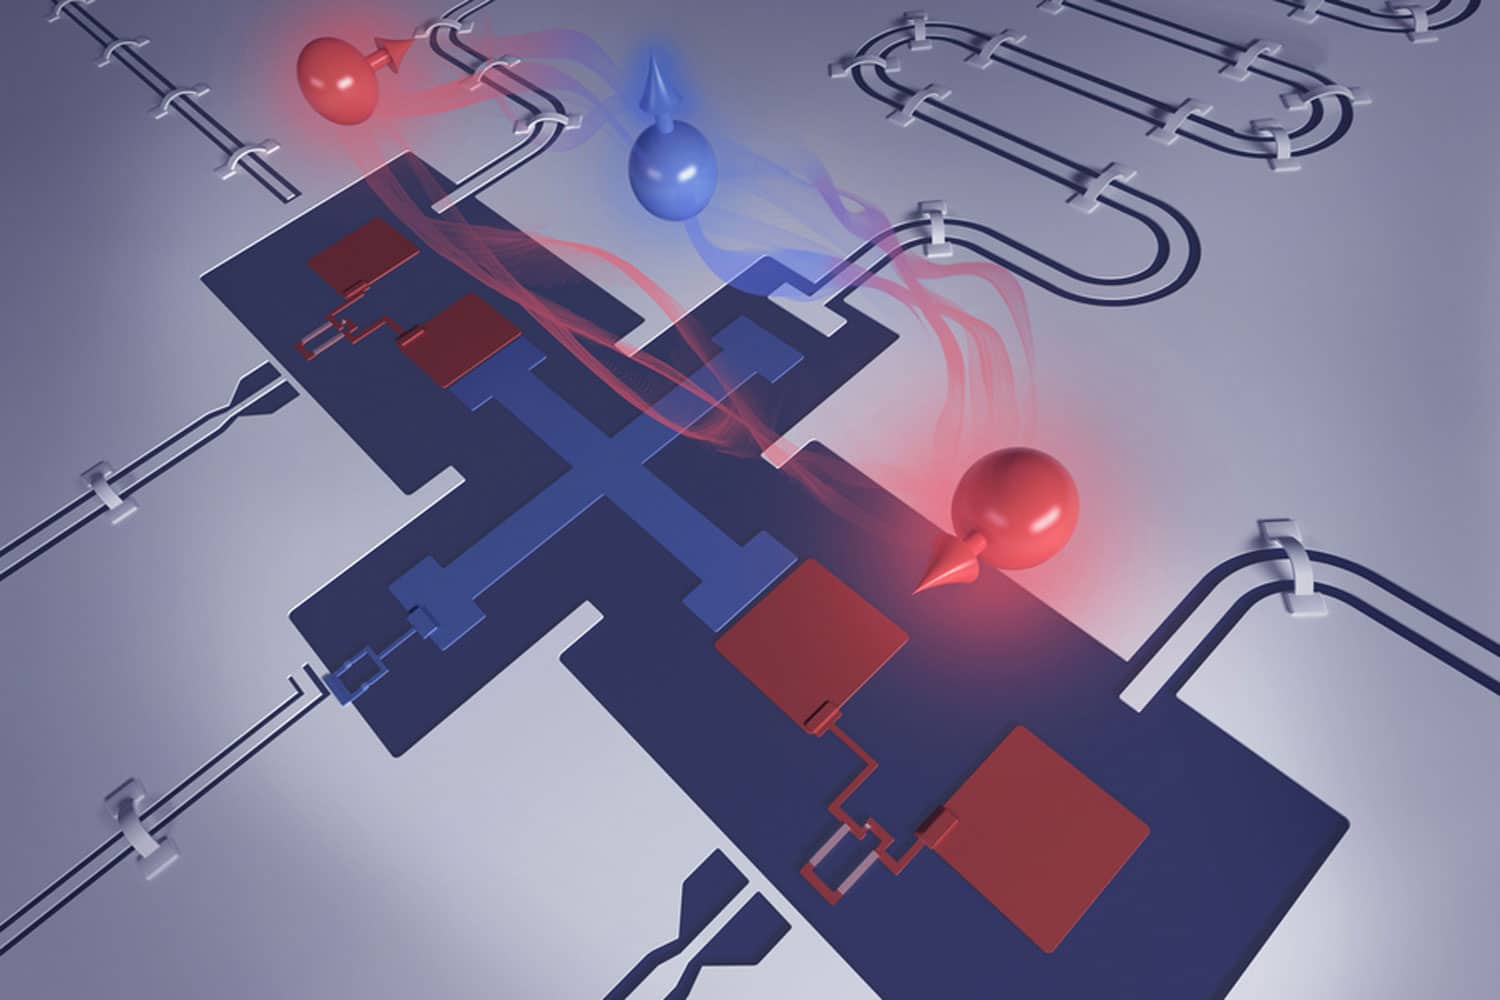 researchers' superconducting qubit architecture